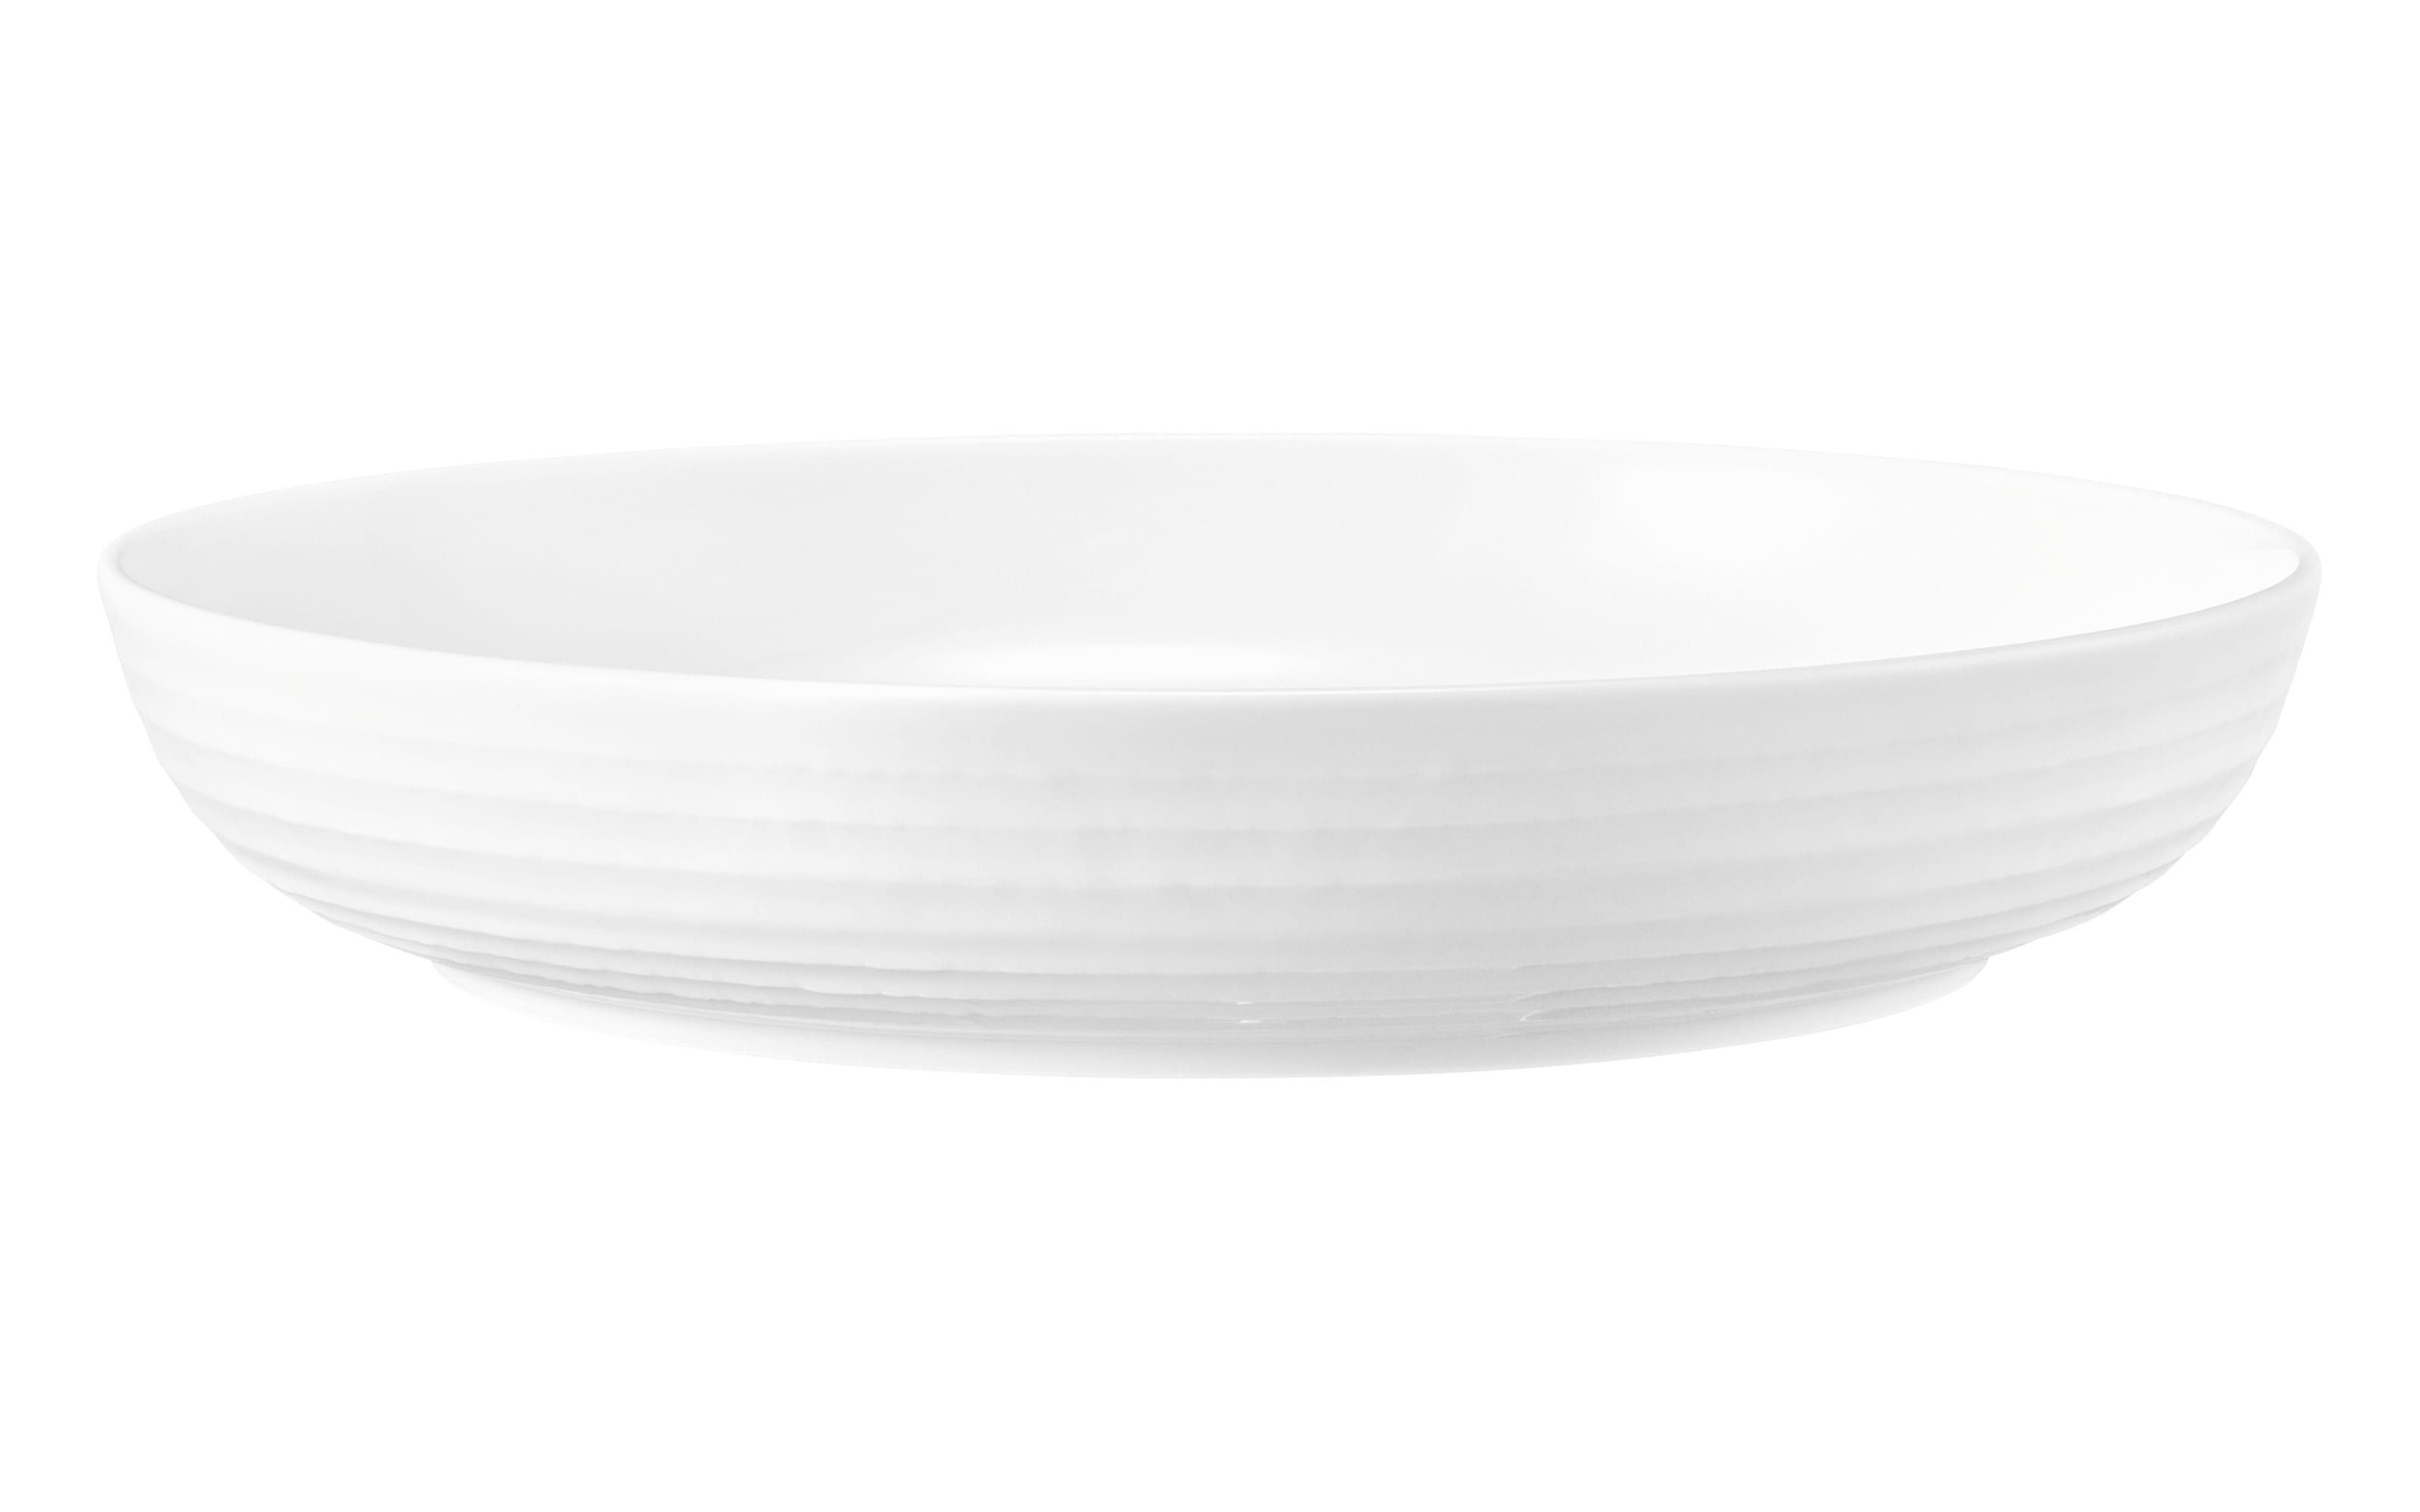 Foodbowl Terra, weiß, 28 cm